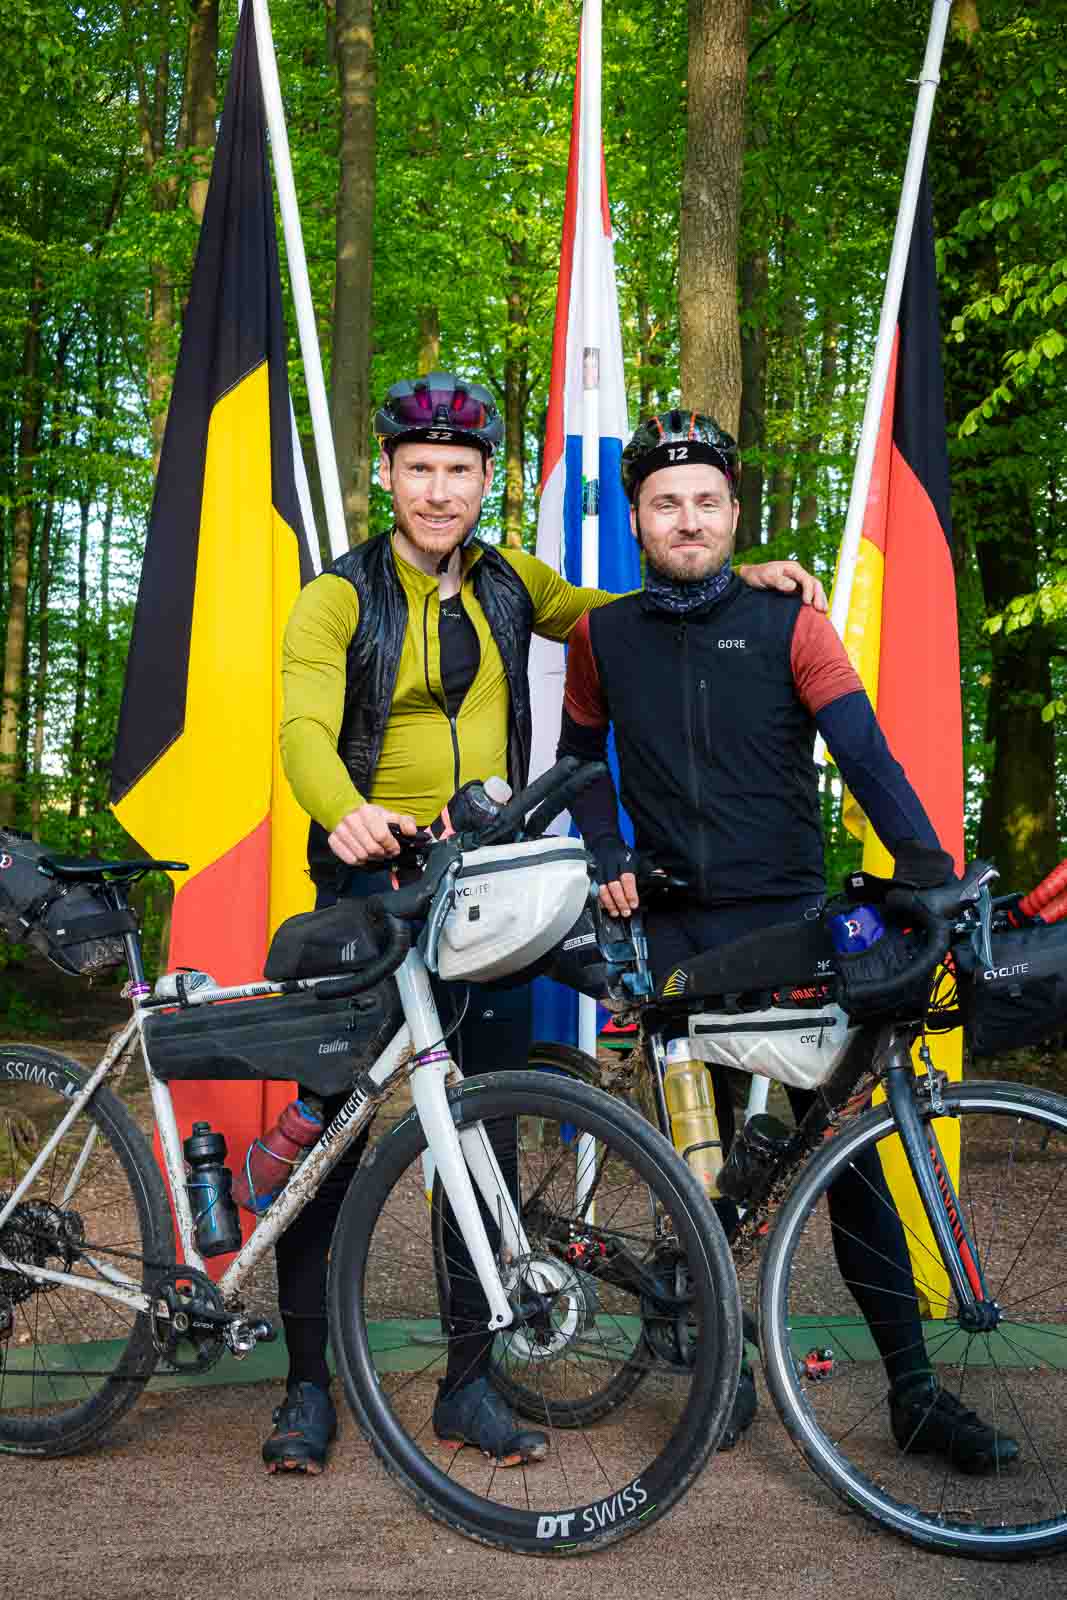 Twee fietsers staan bij het drielandenpunt van Duitsland, België en Nederland en lachen in de camera.